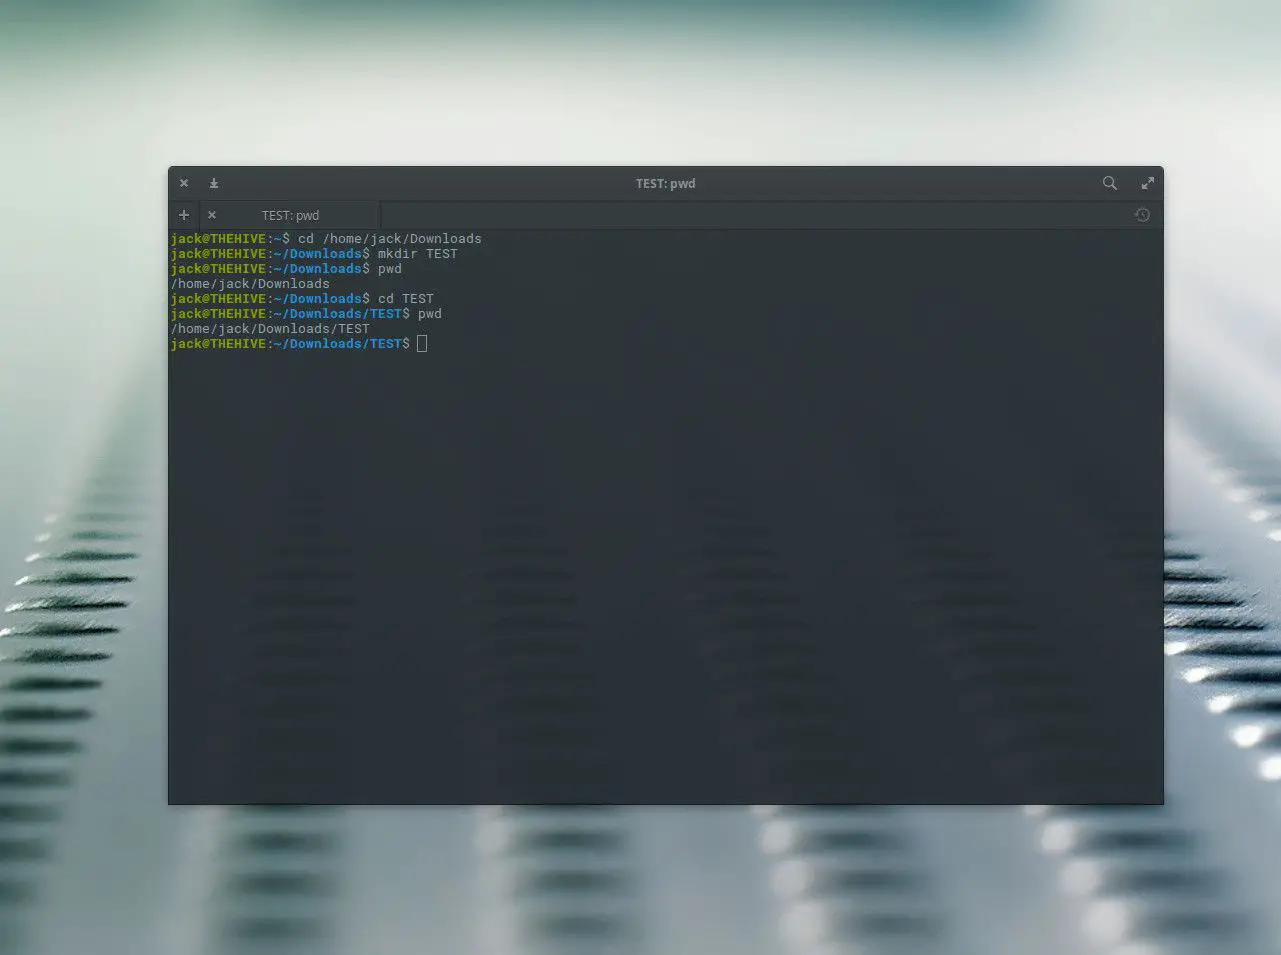 Captura de tela do uso do comando pwd.